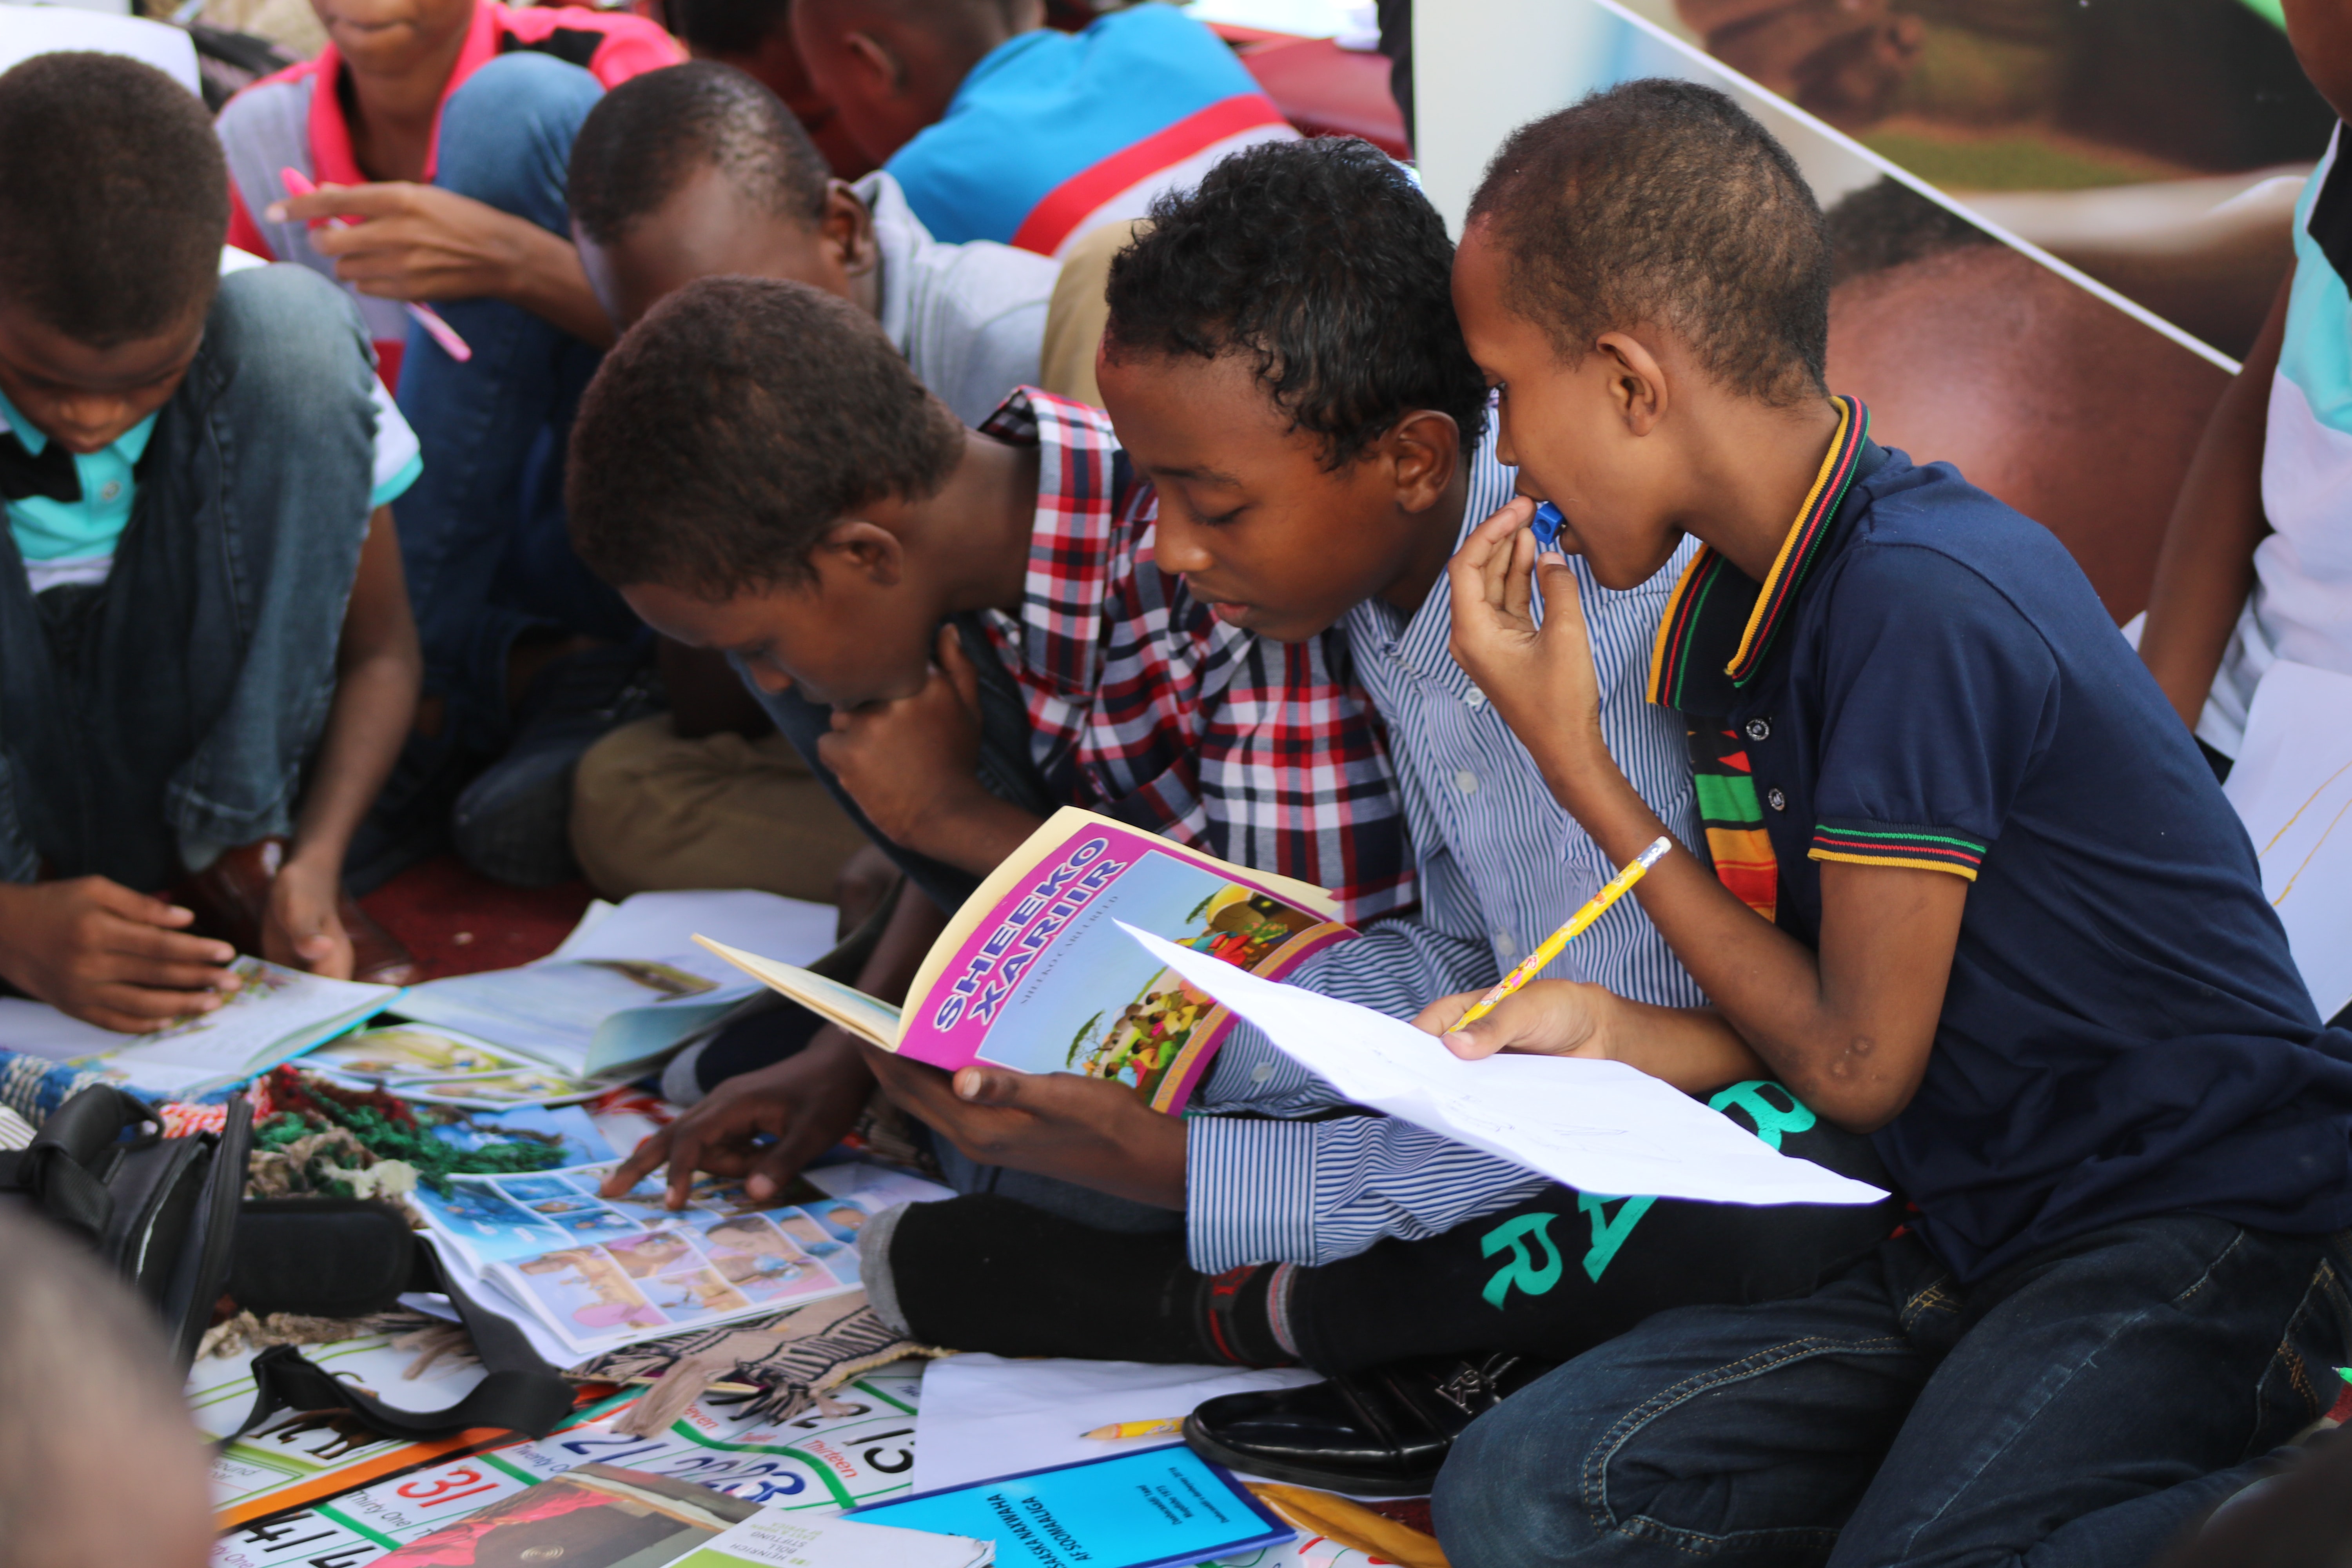 children gathered around a book titled SHEEKO XARIIR